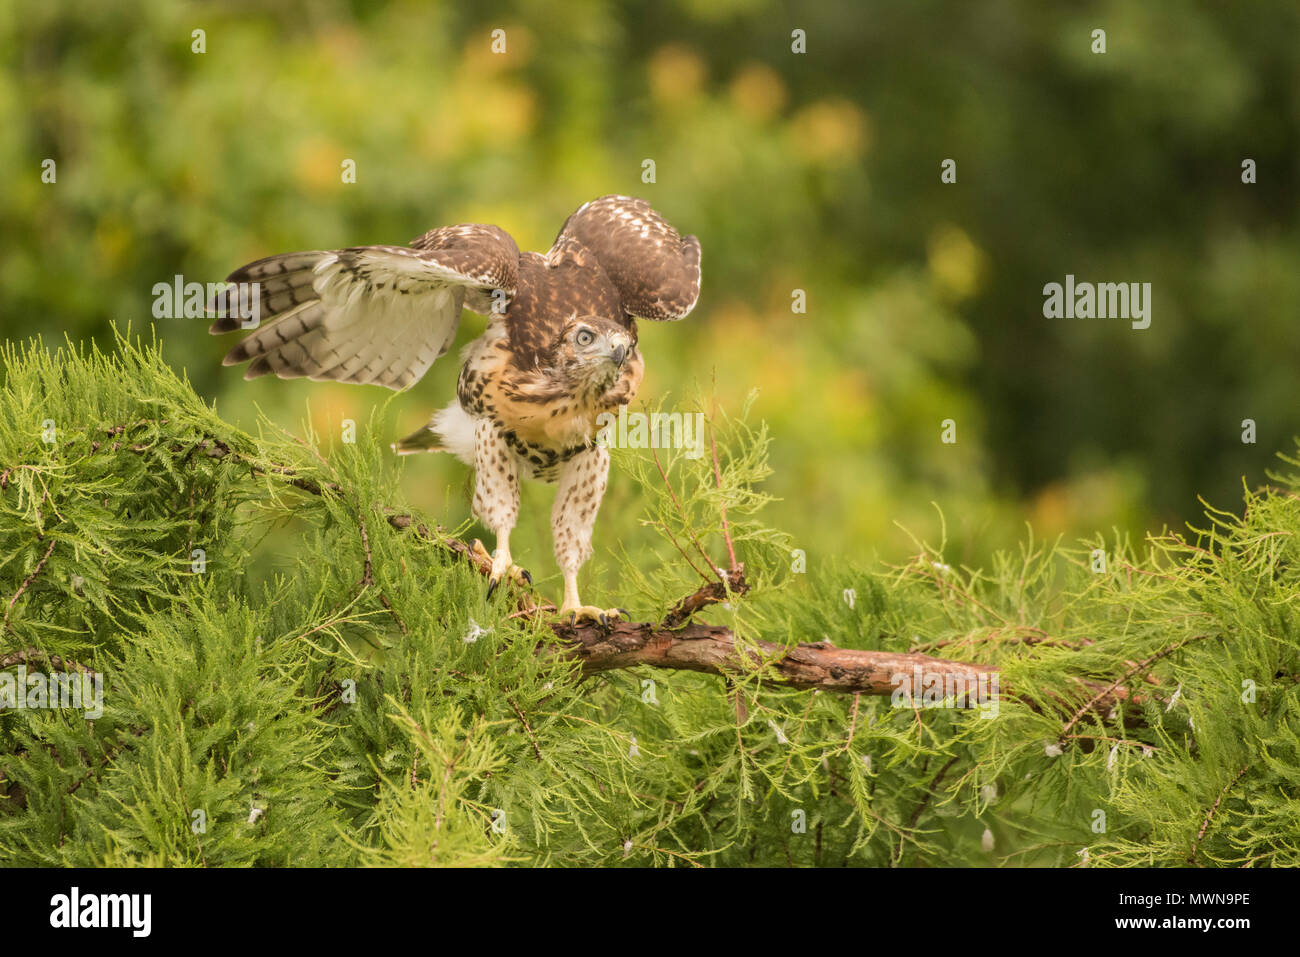 Una neonata red-tailed hawk (Buteo jamaicensis) in una struttura ad albero. Essa non ha ancora volato ma presto fledged e a sinistra la struttura ad albero e il nido in dietro. Foto Stock